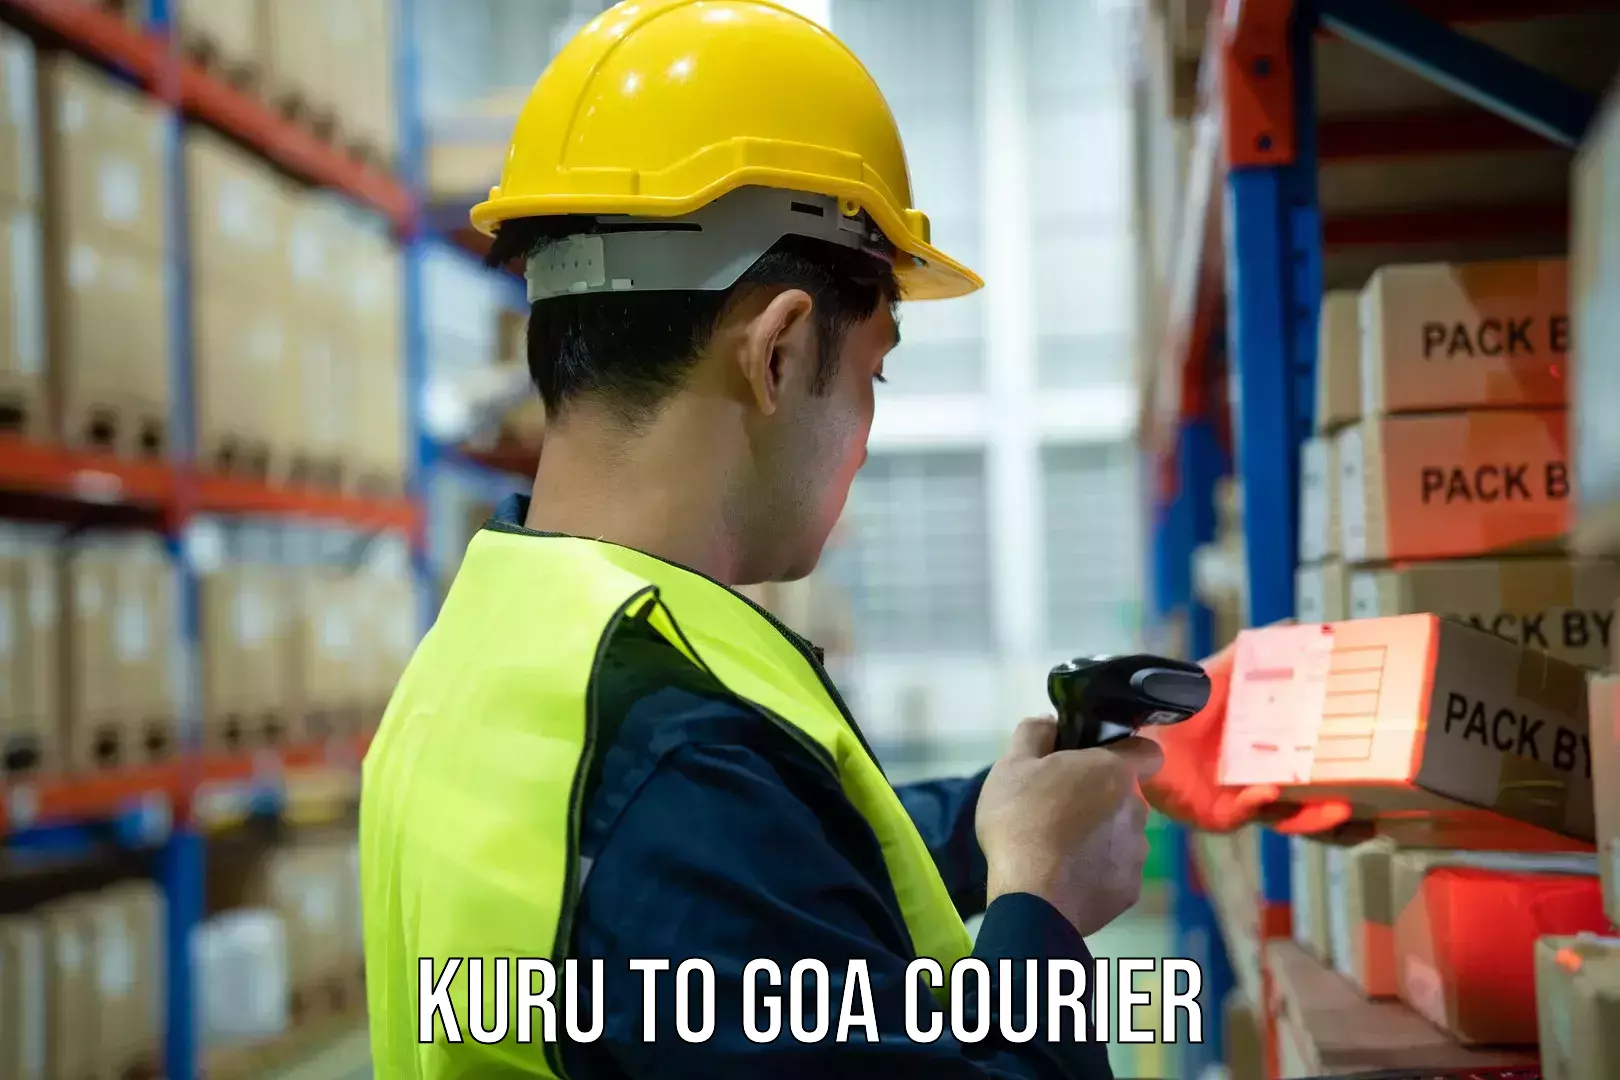 Easy access courier services Kuru to Mormugao Port